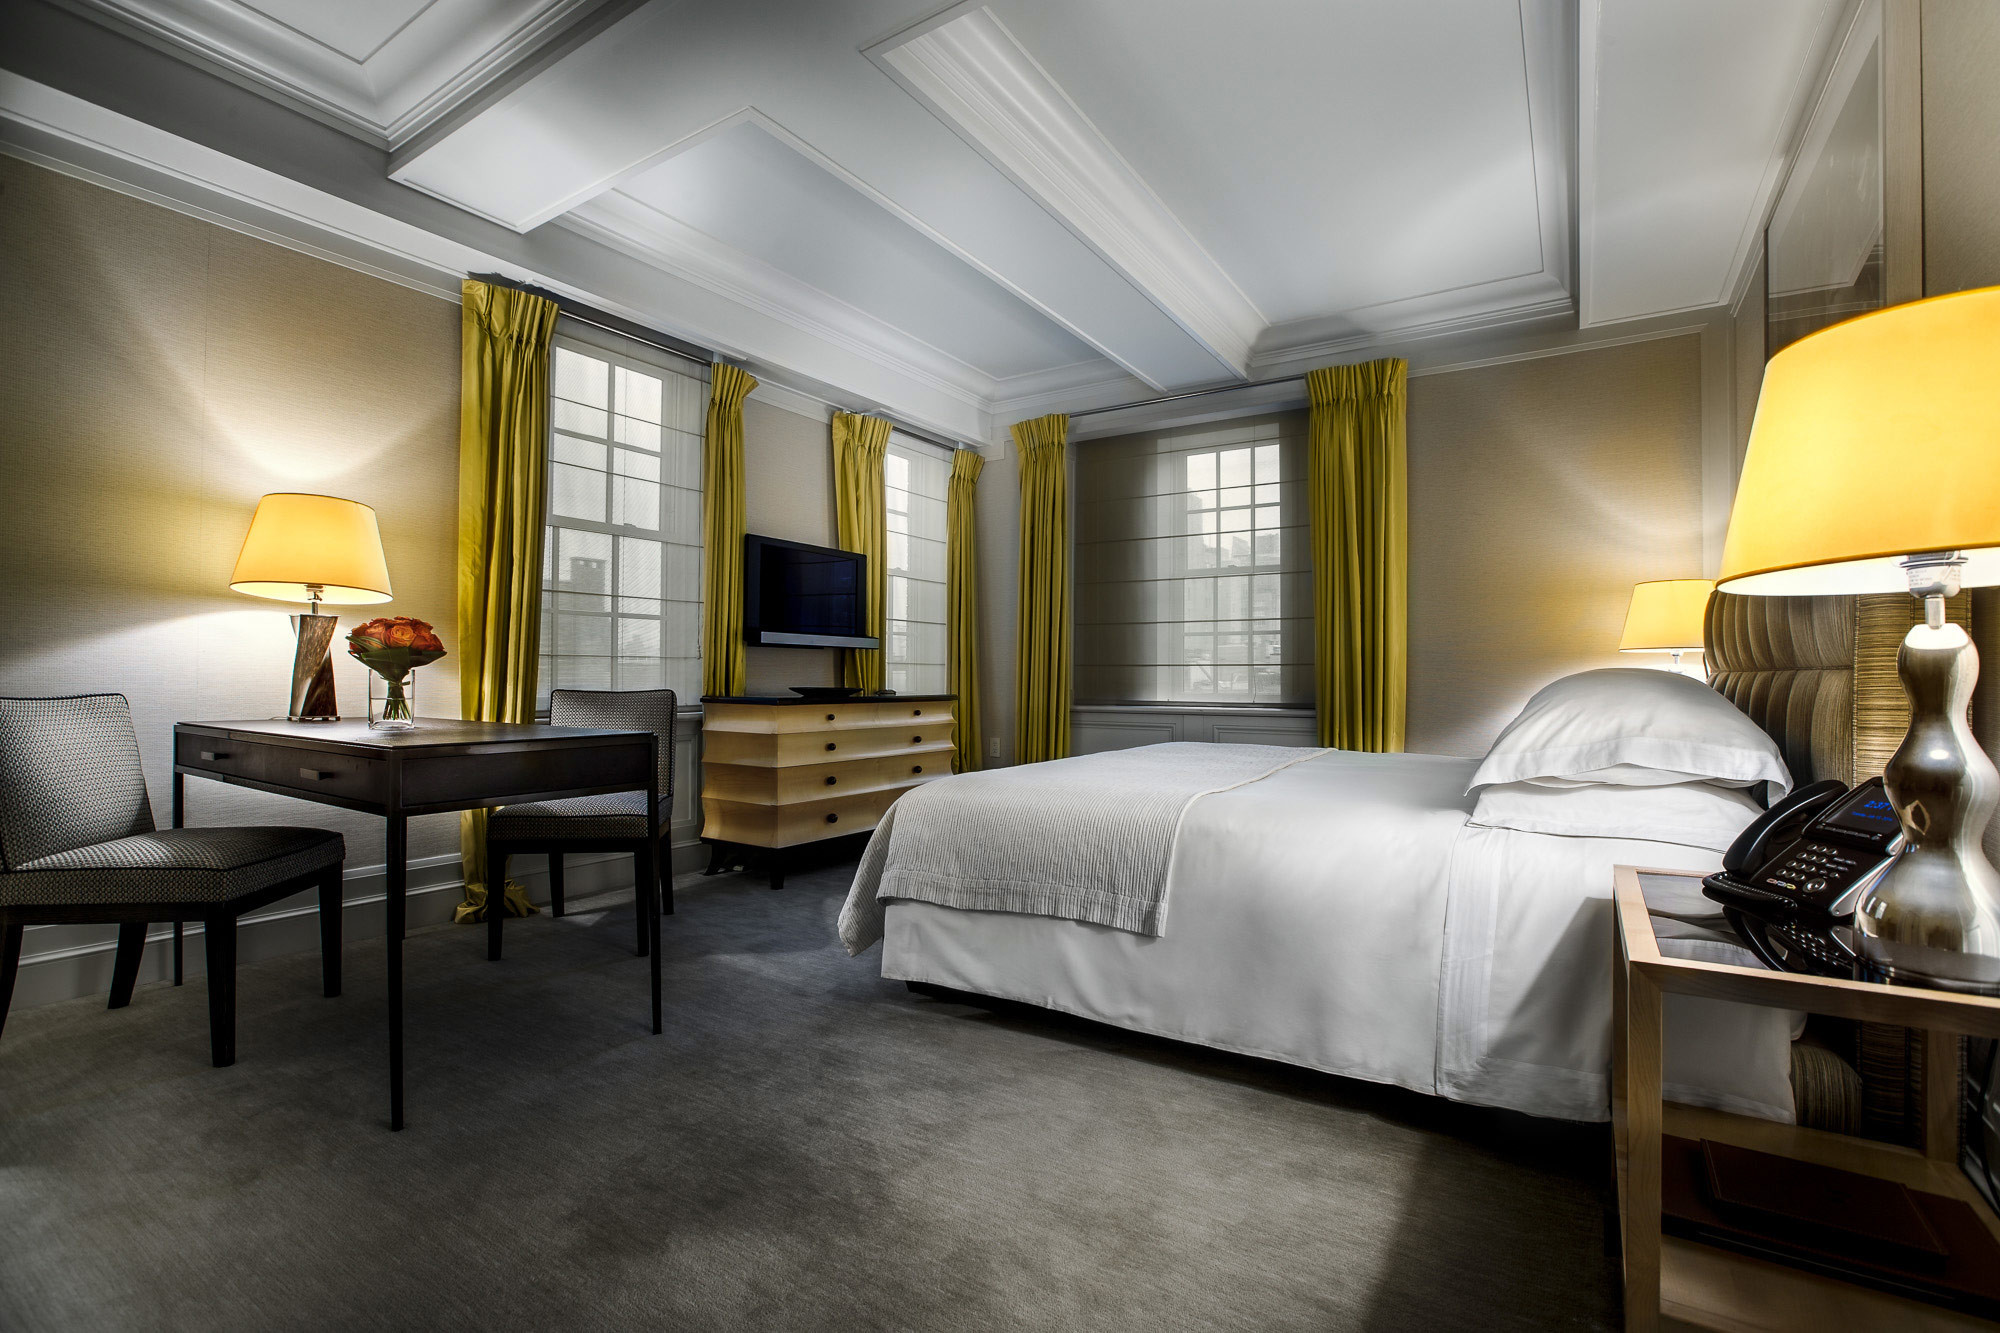 2 bedroom hotel suites